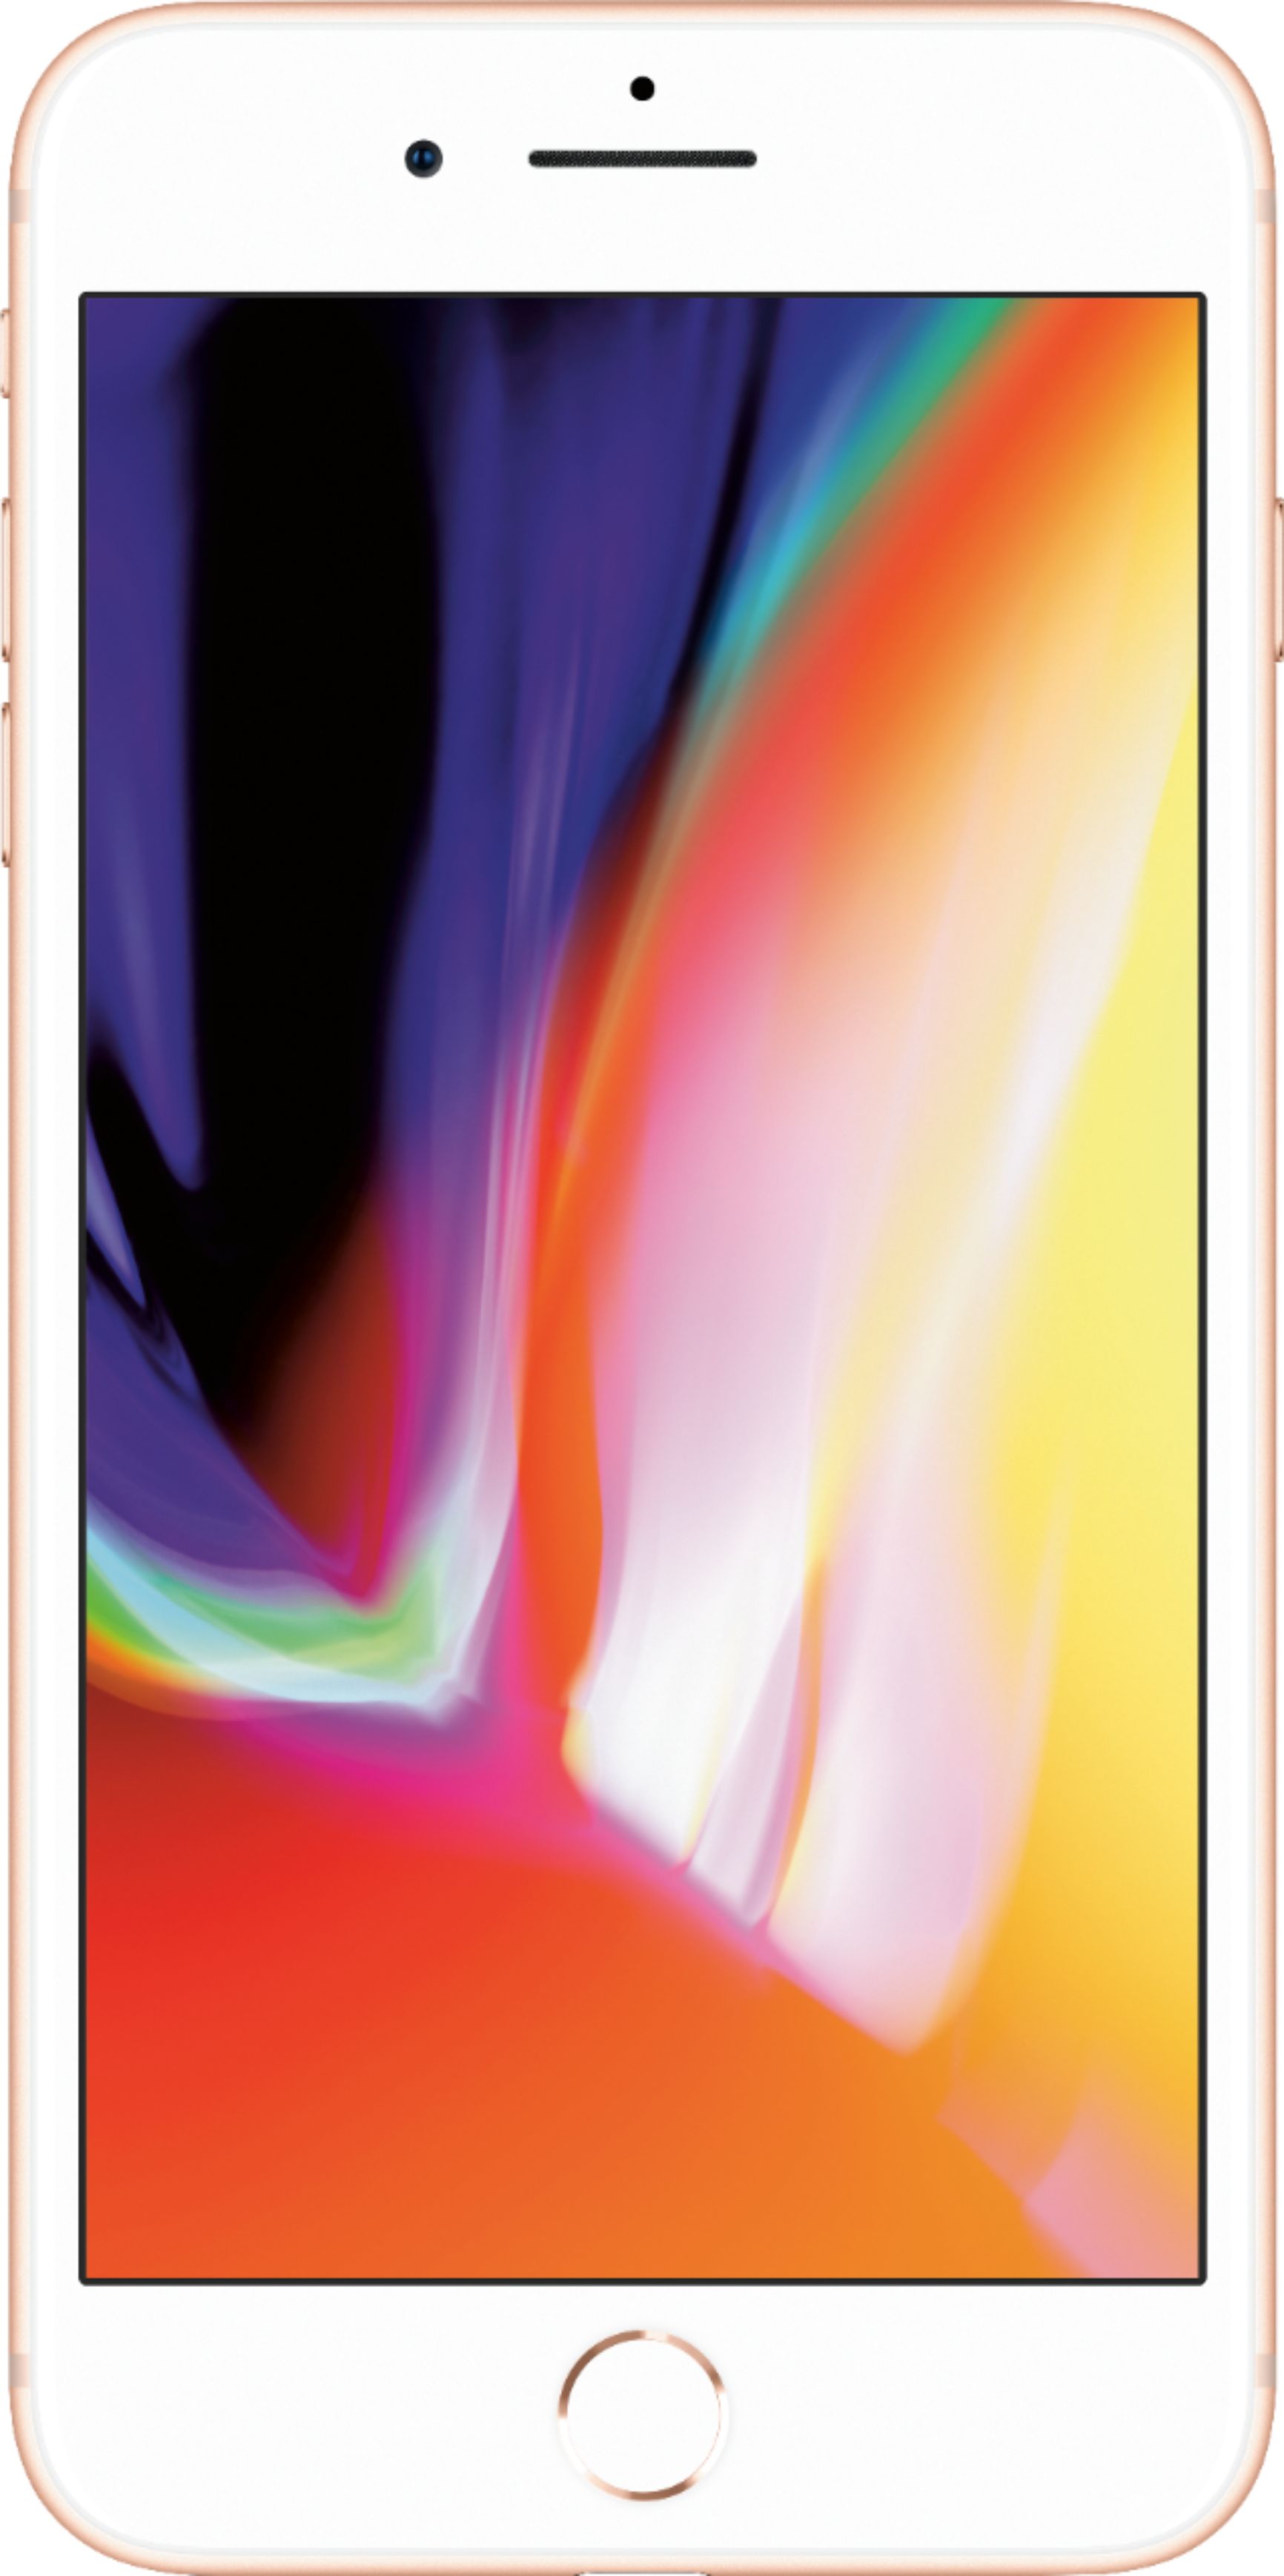 Best Buy: Apple iPhone 8 Plus 64GB Gold (Verizon) MQ8F2LL/A